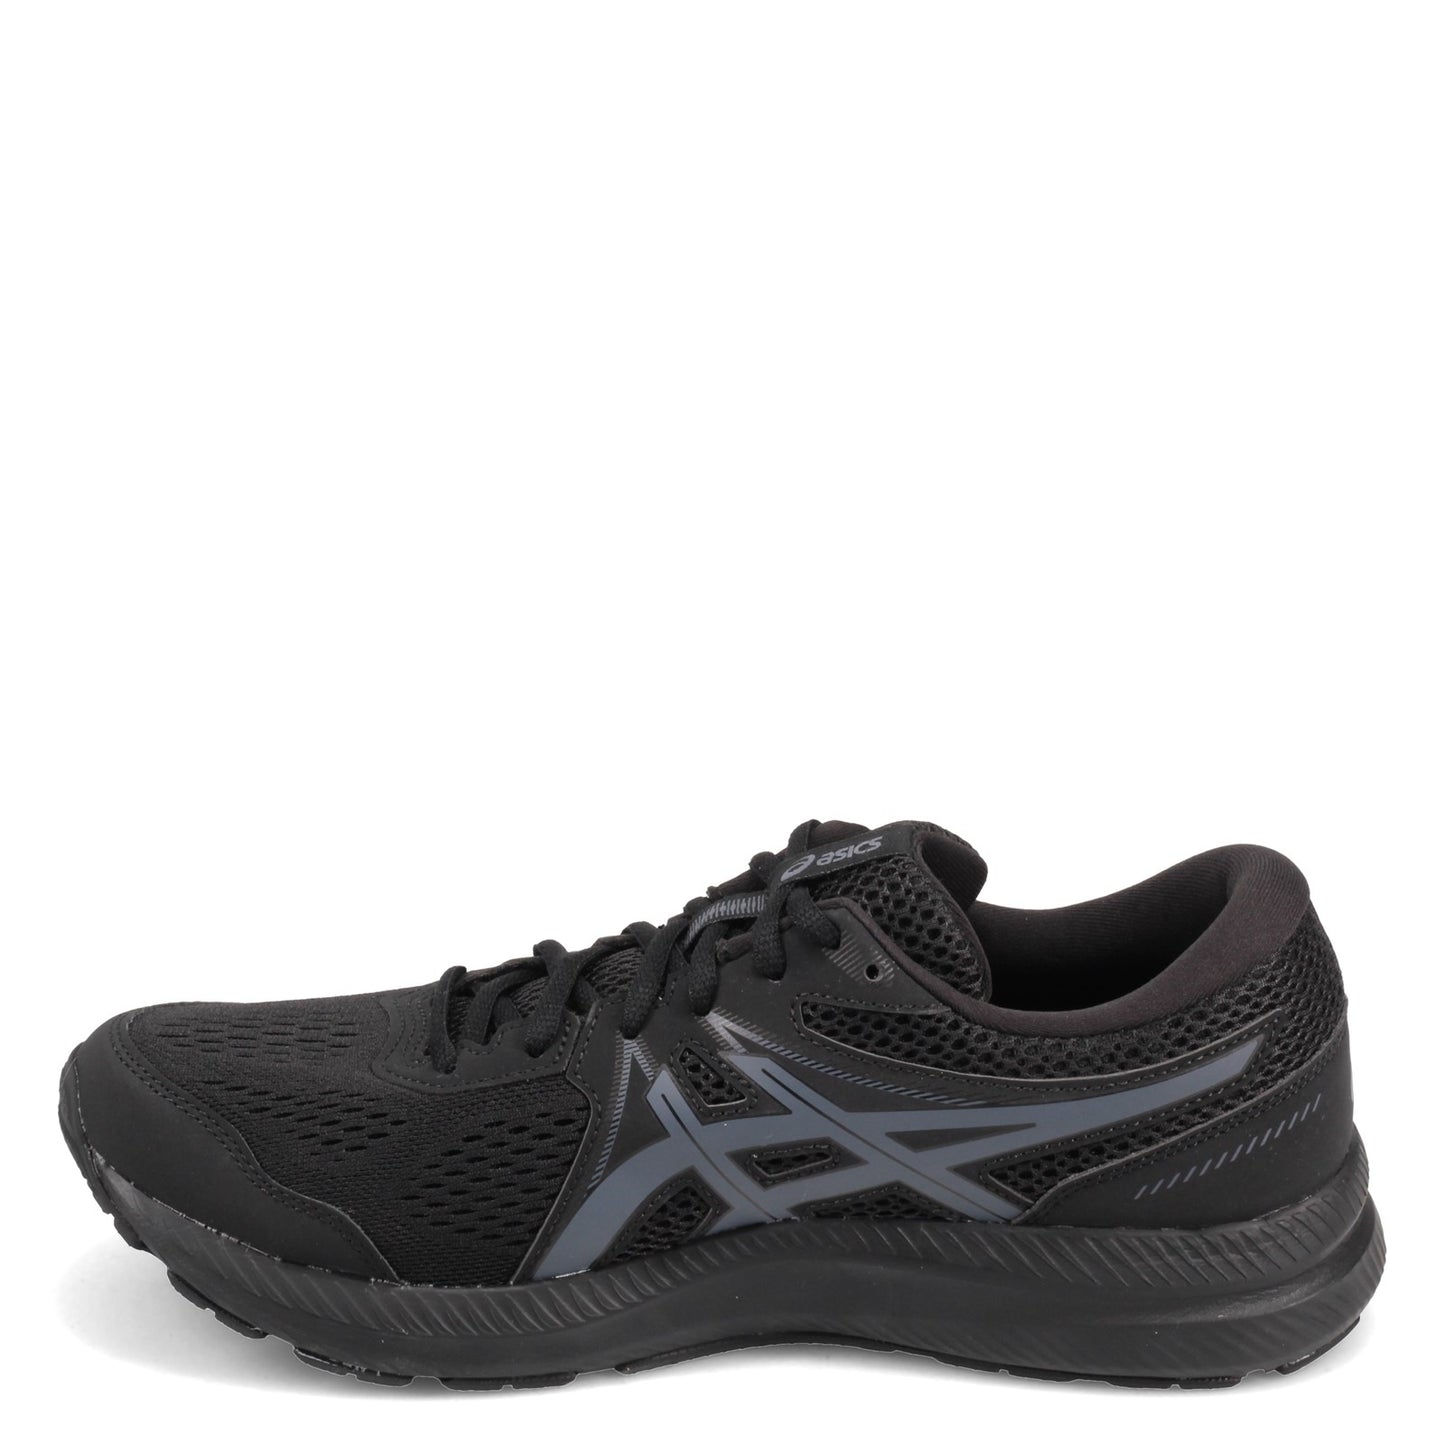 Peltz Shoes  Men's ASICS GEL-Contend 7 Running Shoe BLACK GRAY 1011B040-001